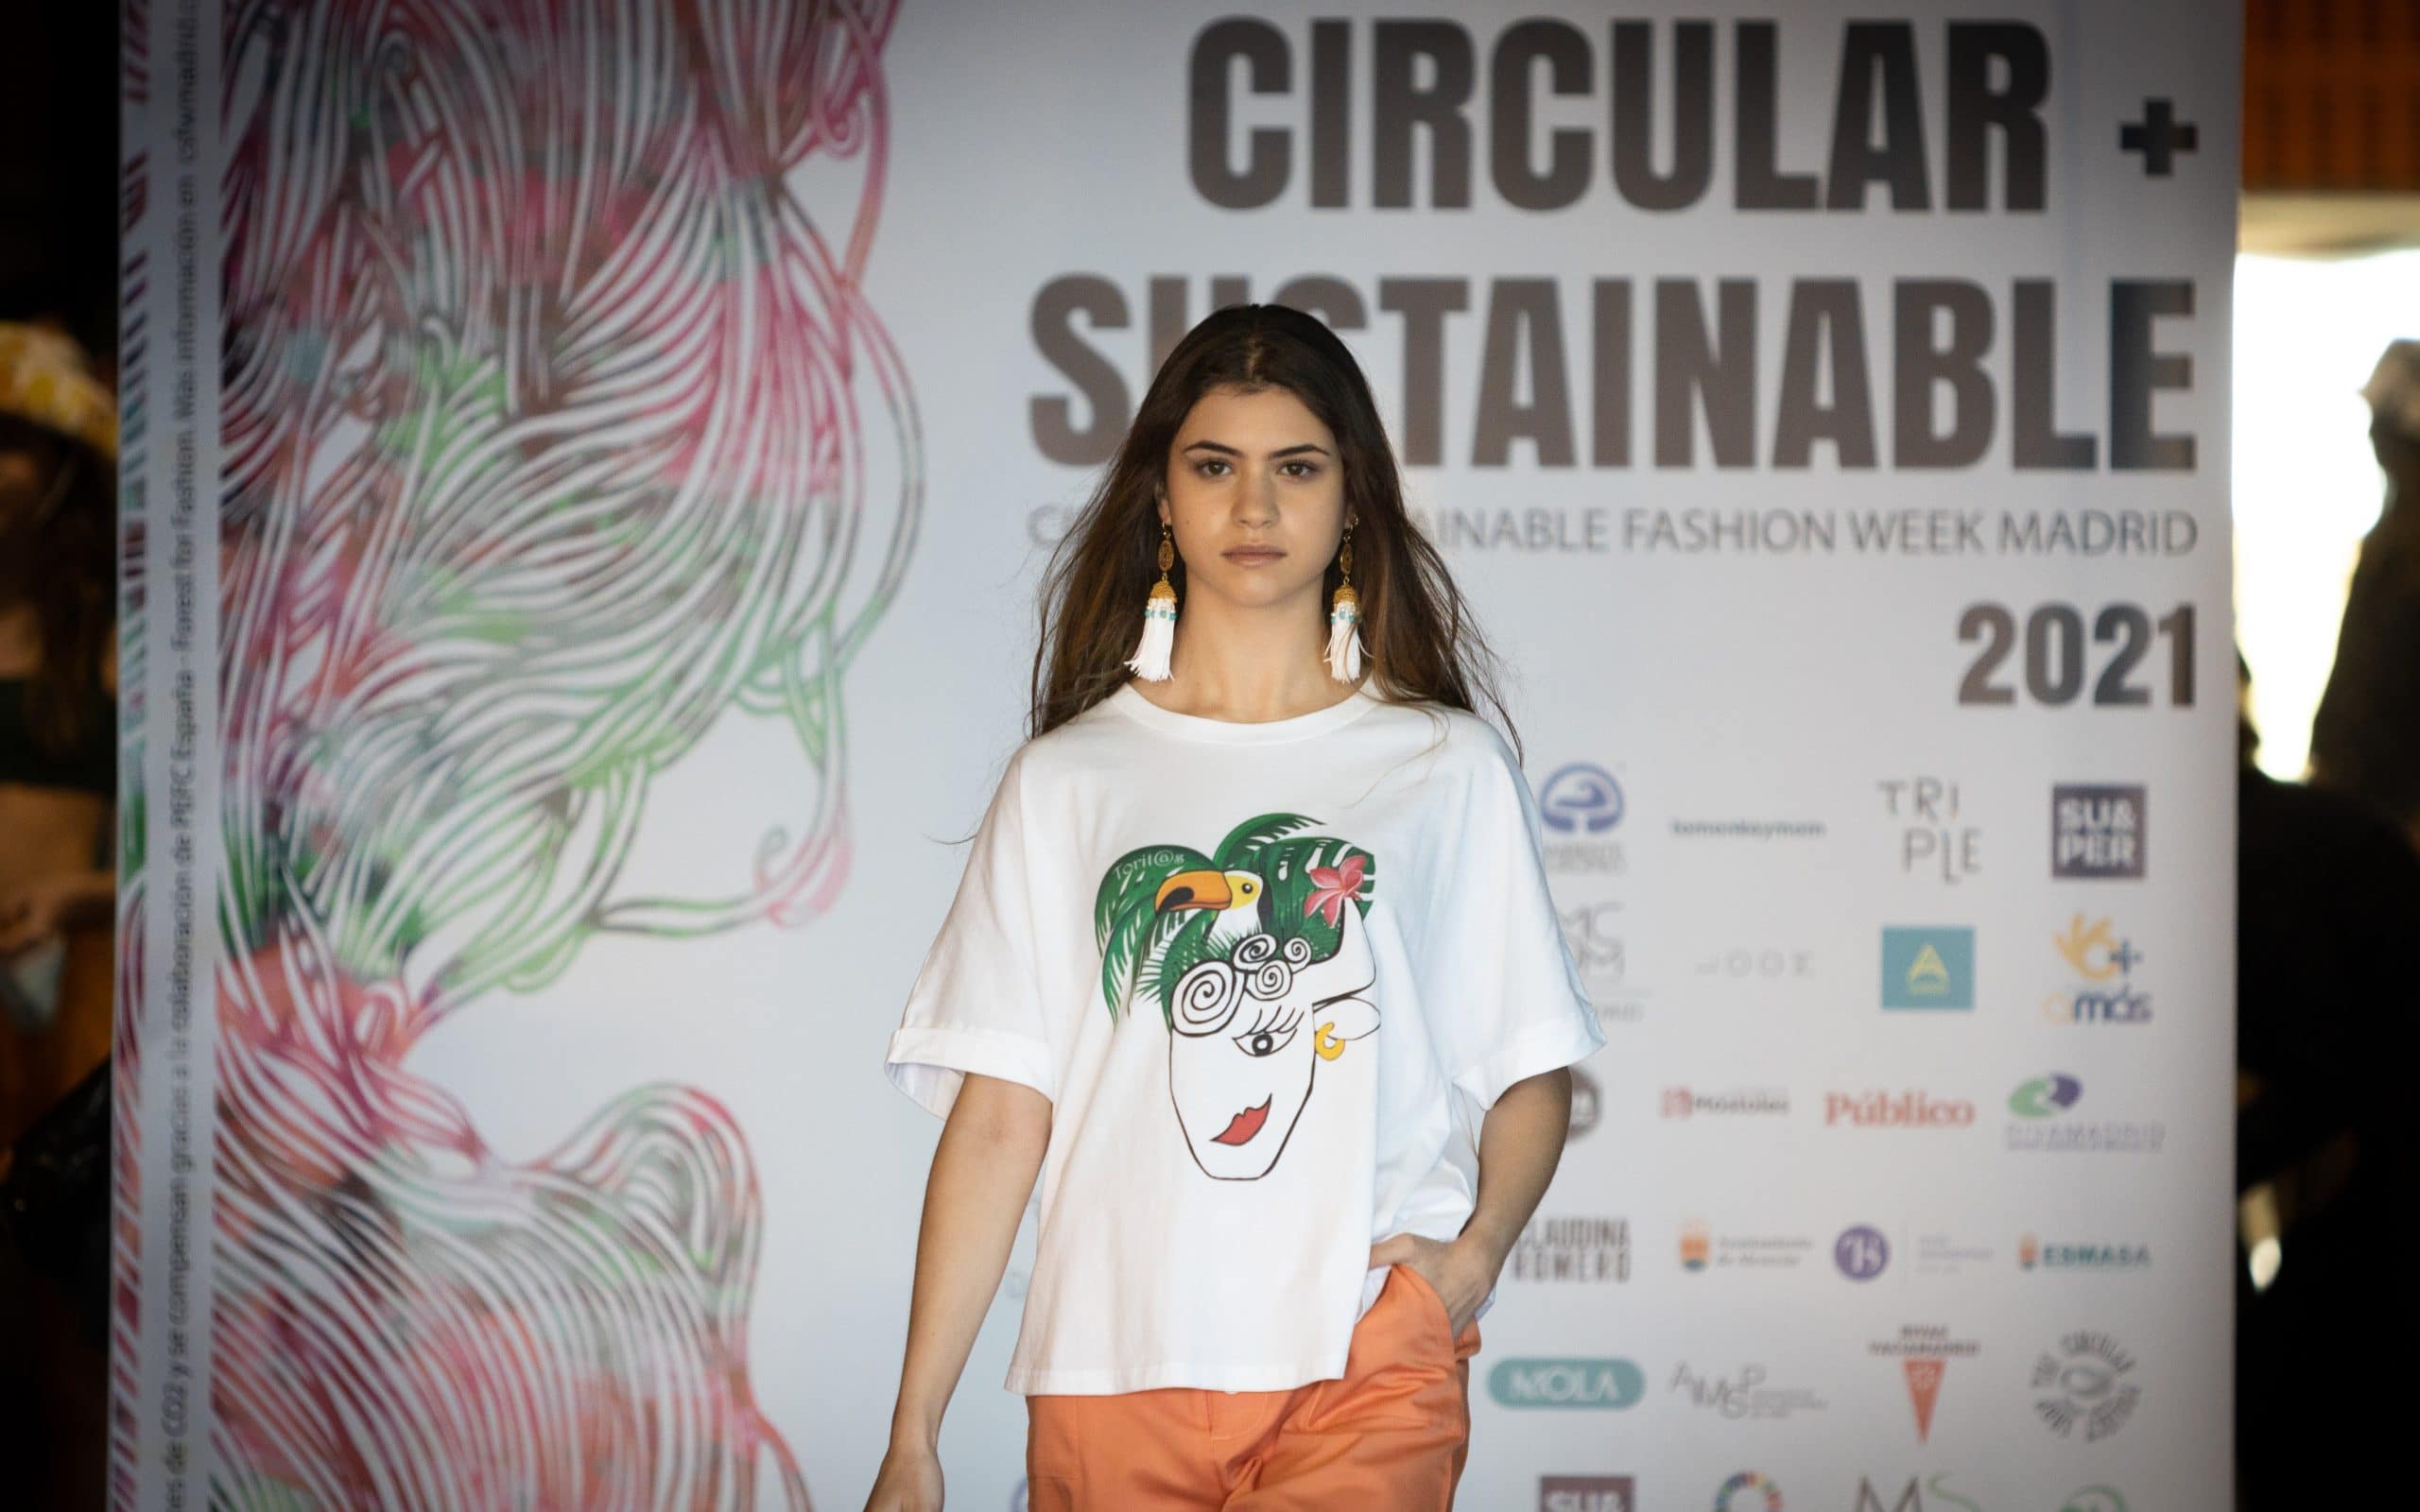 'Pasarela 17', desfile de la Circular Sustainable Fashion Week de Madrid, celebrada en Rivas Vaciamadrid